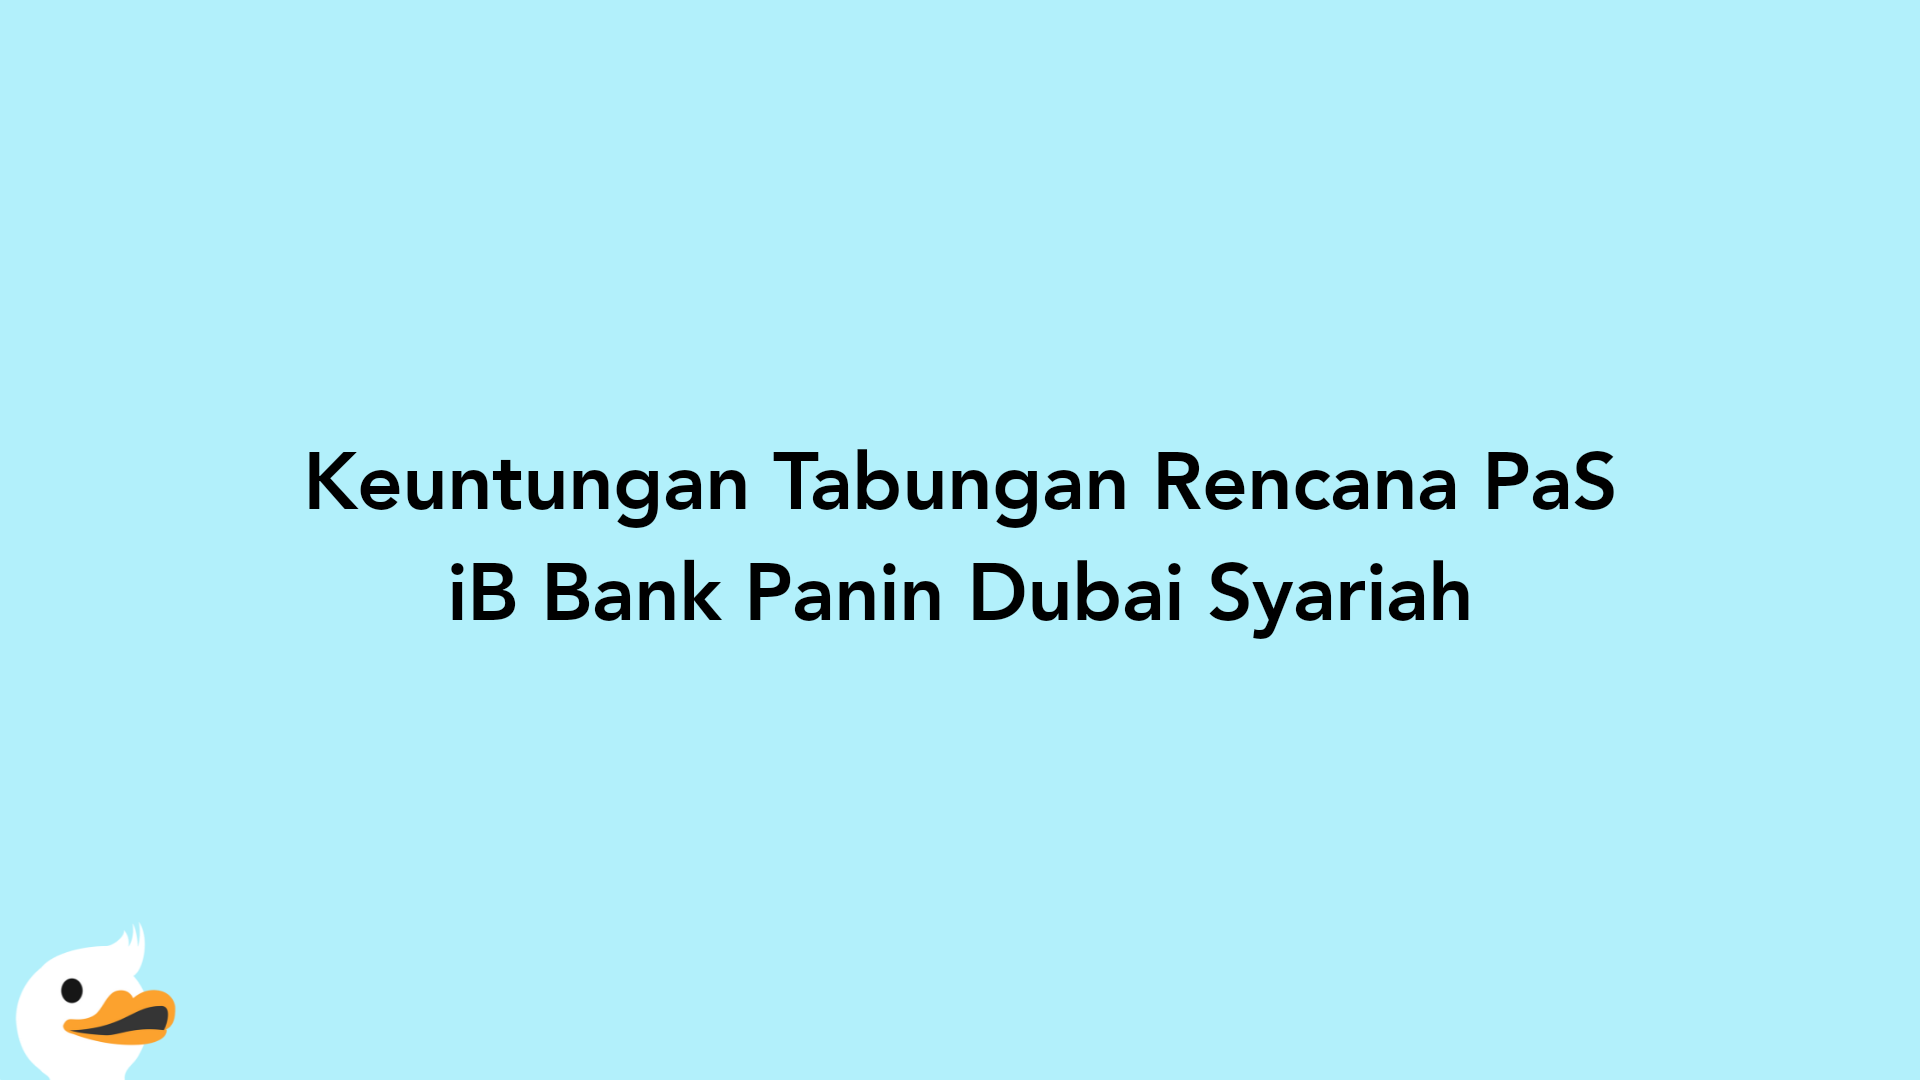 Keuntungan Tabungan Rencana PaS iB Bank Panin Dubai Syariah